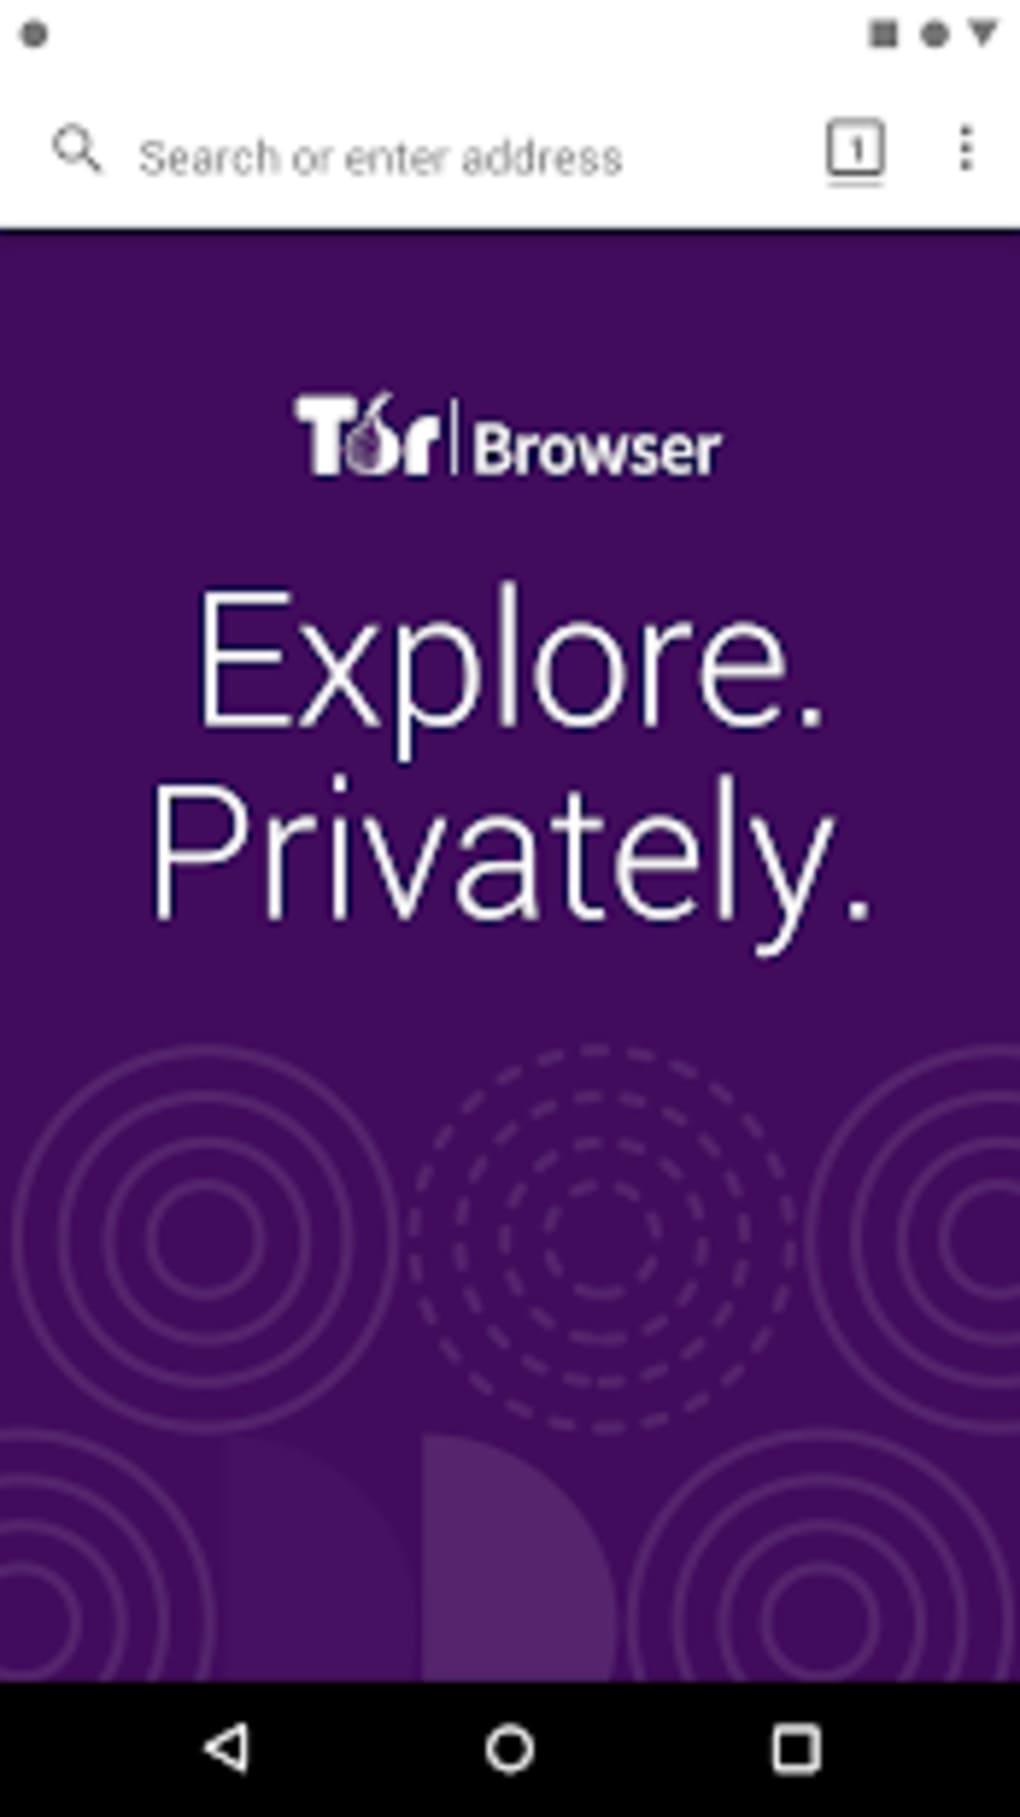 Download tor browser for android mega как подключиться к даркнет mega